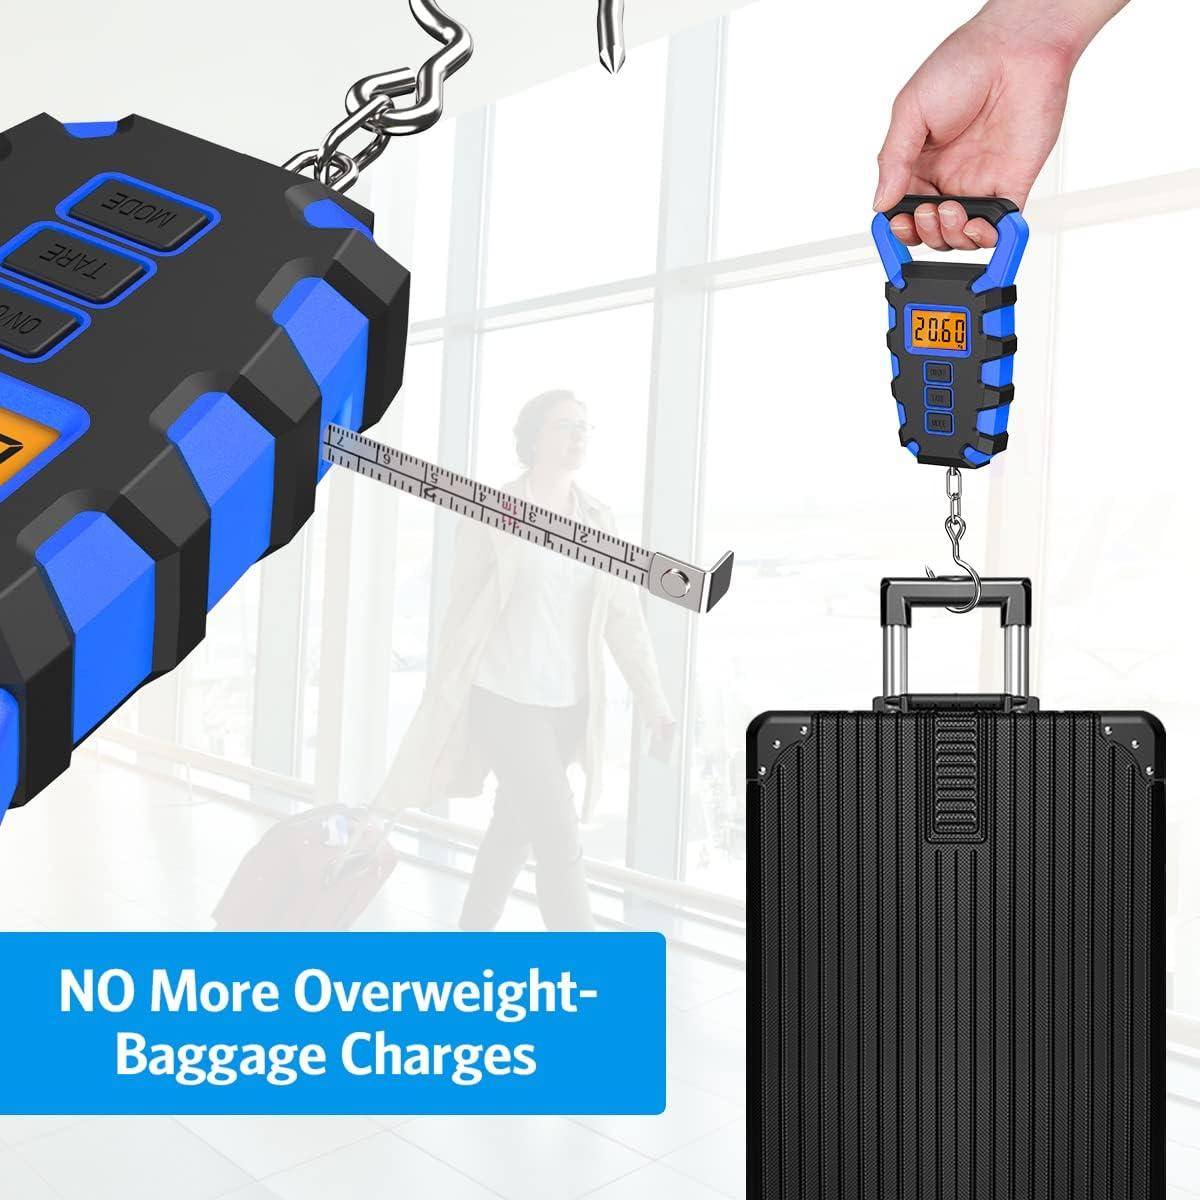 Luggage Digital Scale, MAX 110lb/50kg